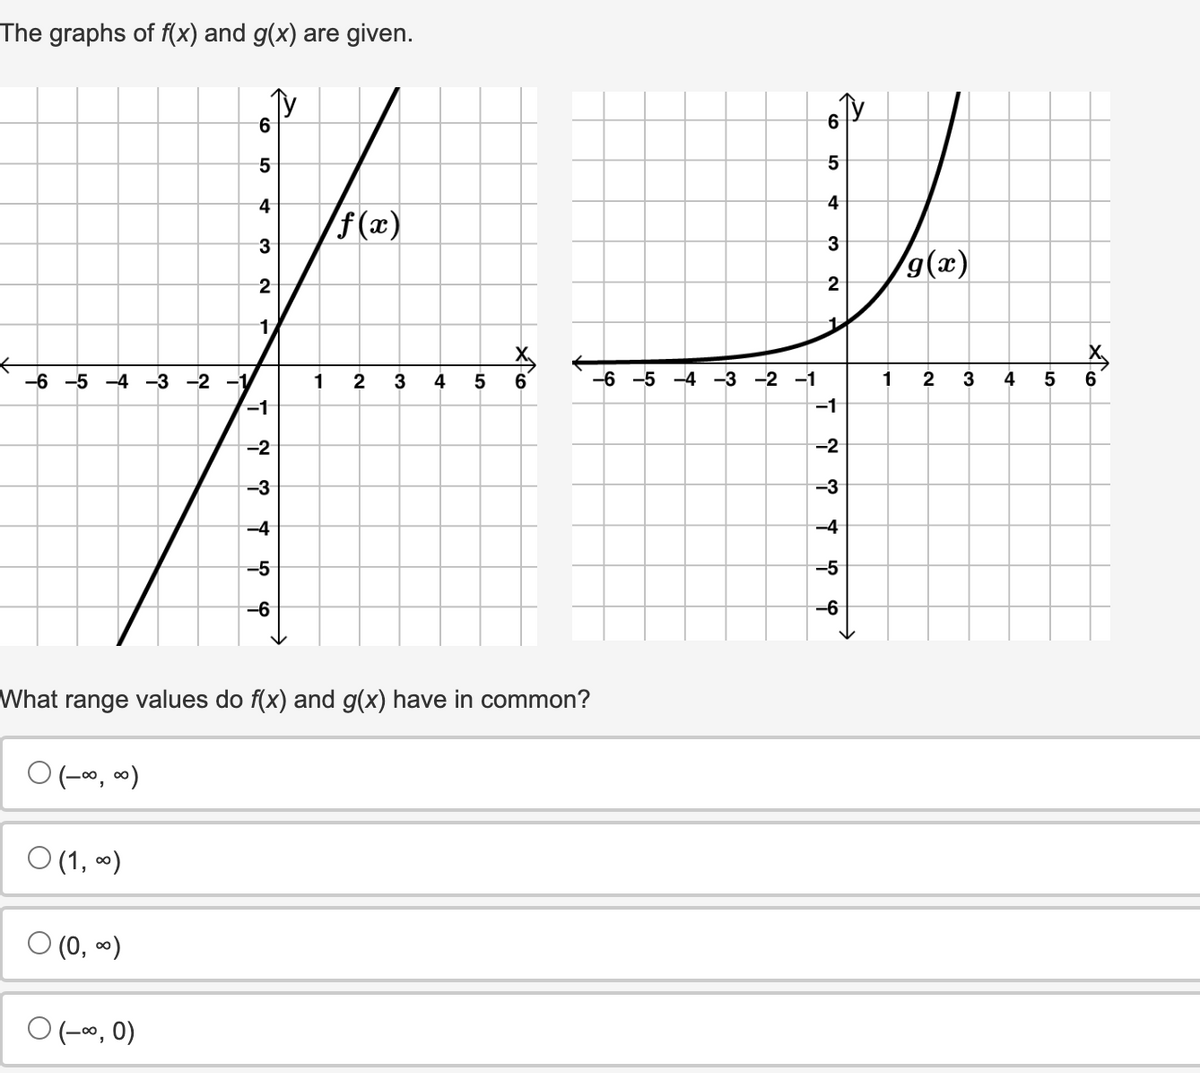 The graphs of f(x) and g(x) are given.
-6 -5 -4 -3 -2 -1
What
0 (-∞, ∞)
0 (1, 0)
0 (0, ∞)
6
5
0 (-∞, 0)
4
3
2
1
-1
-2
-3
-4
-5
-6
1
f(x)
2 3 4
range values do f(x) and g(x) have in common?
01
5
x6
CO
5
4
3
2
-6 -5 -4 -3 -2 -1
-1
-2
-3
-4
-5
-6
1
g(x)
2 3
4
5
x160